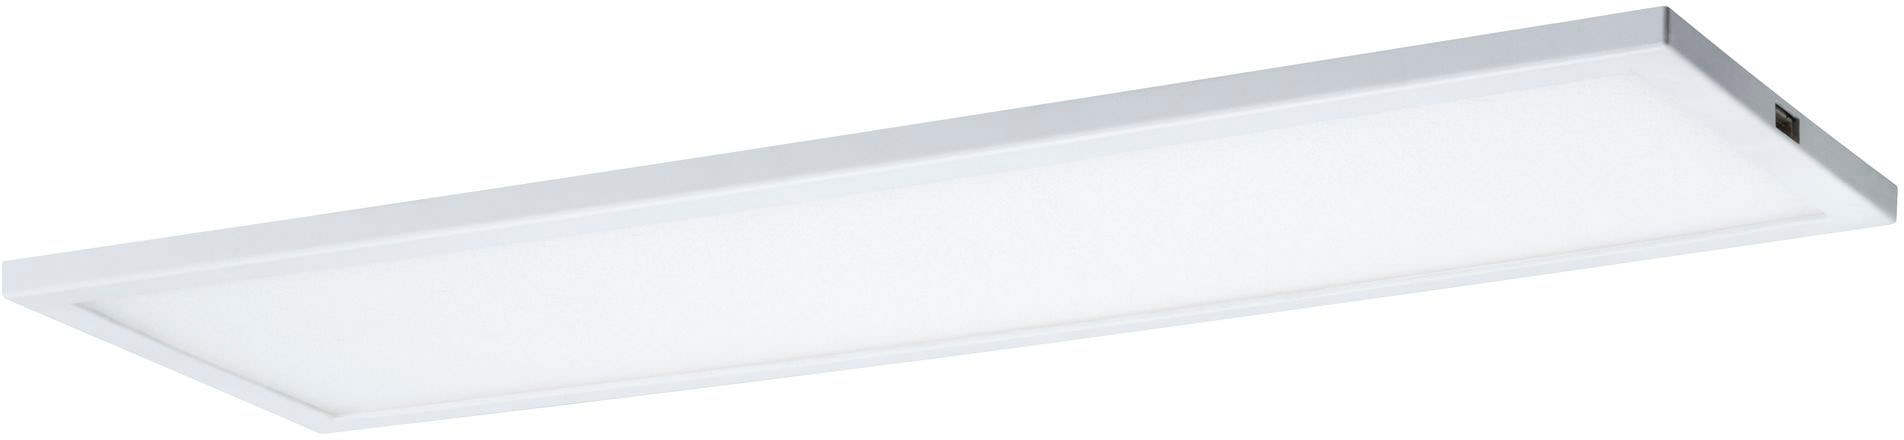 Unterschrankleuchte »LED Panel Ace 7,5W Weiß 10x30cm Erweiterung«, 1 flammig, LED...